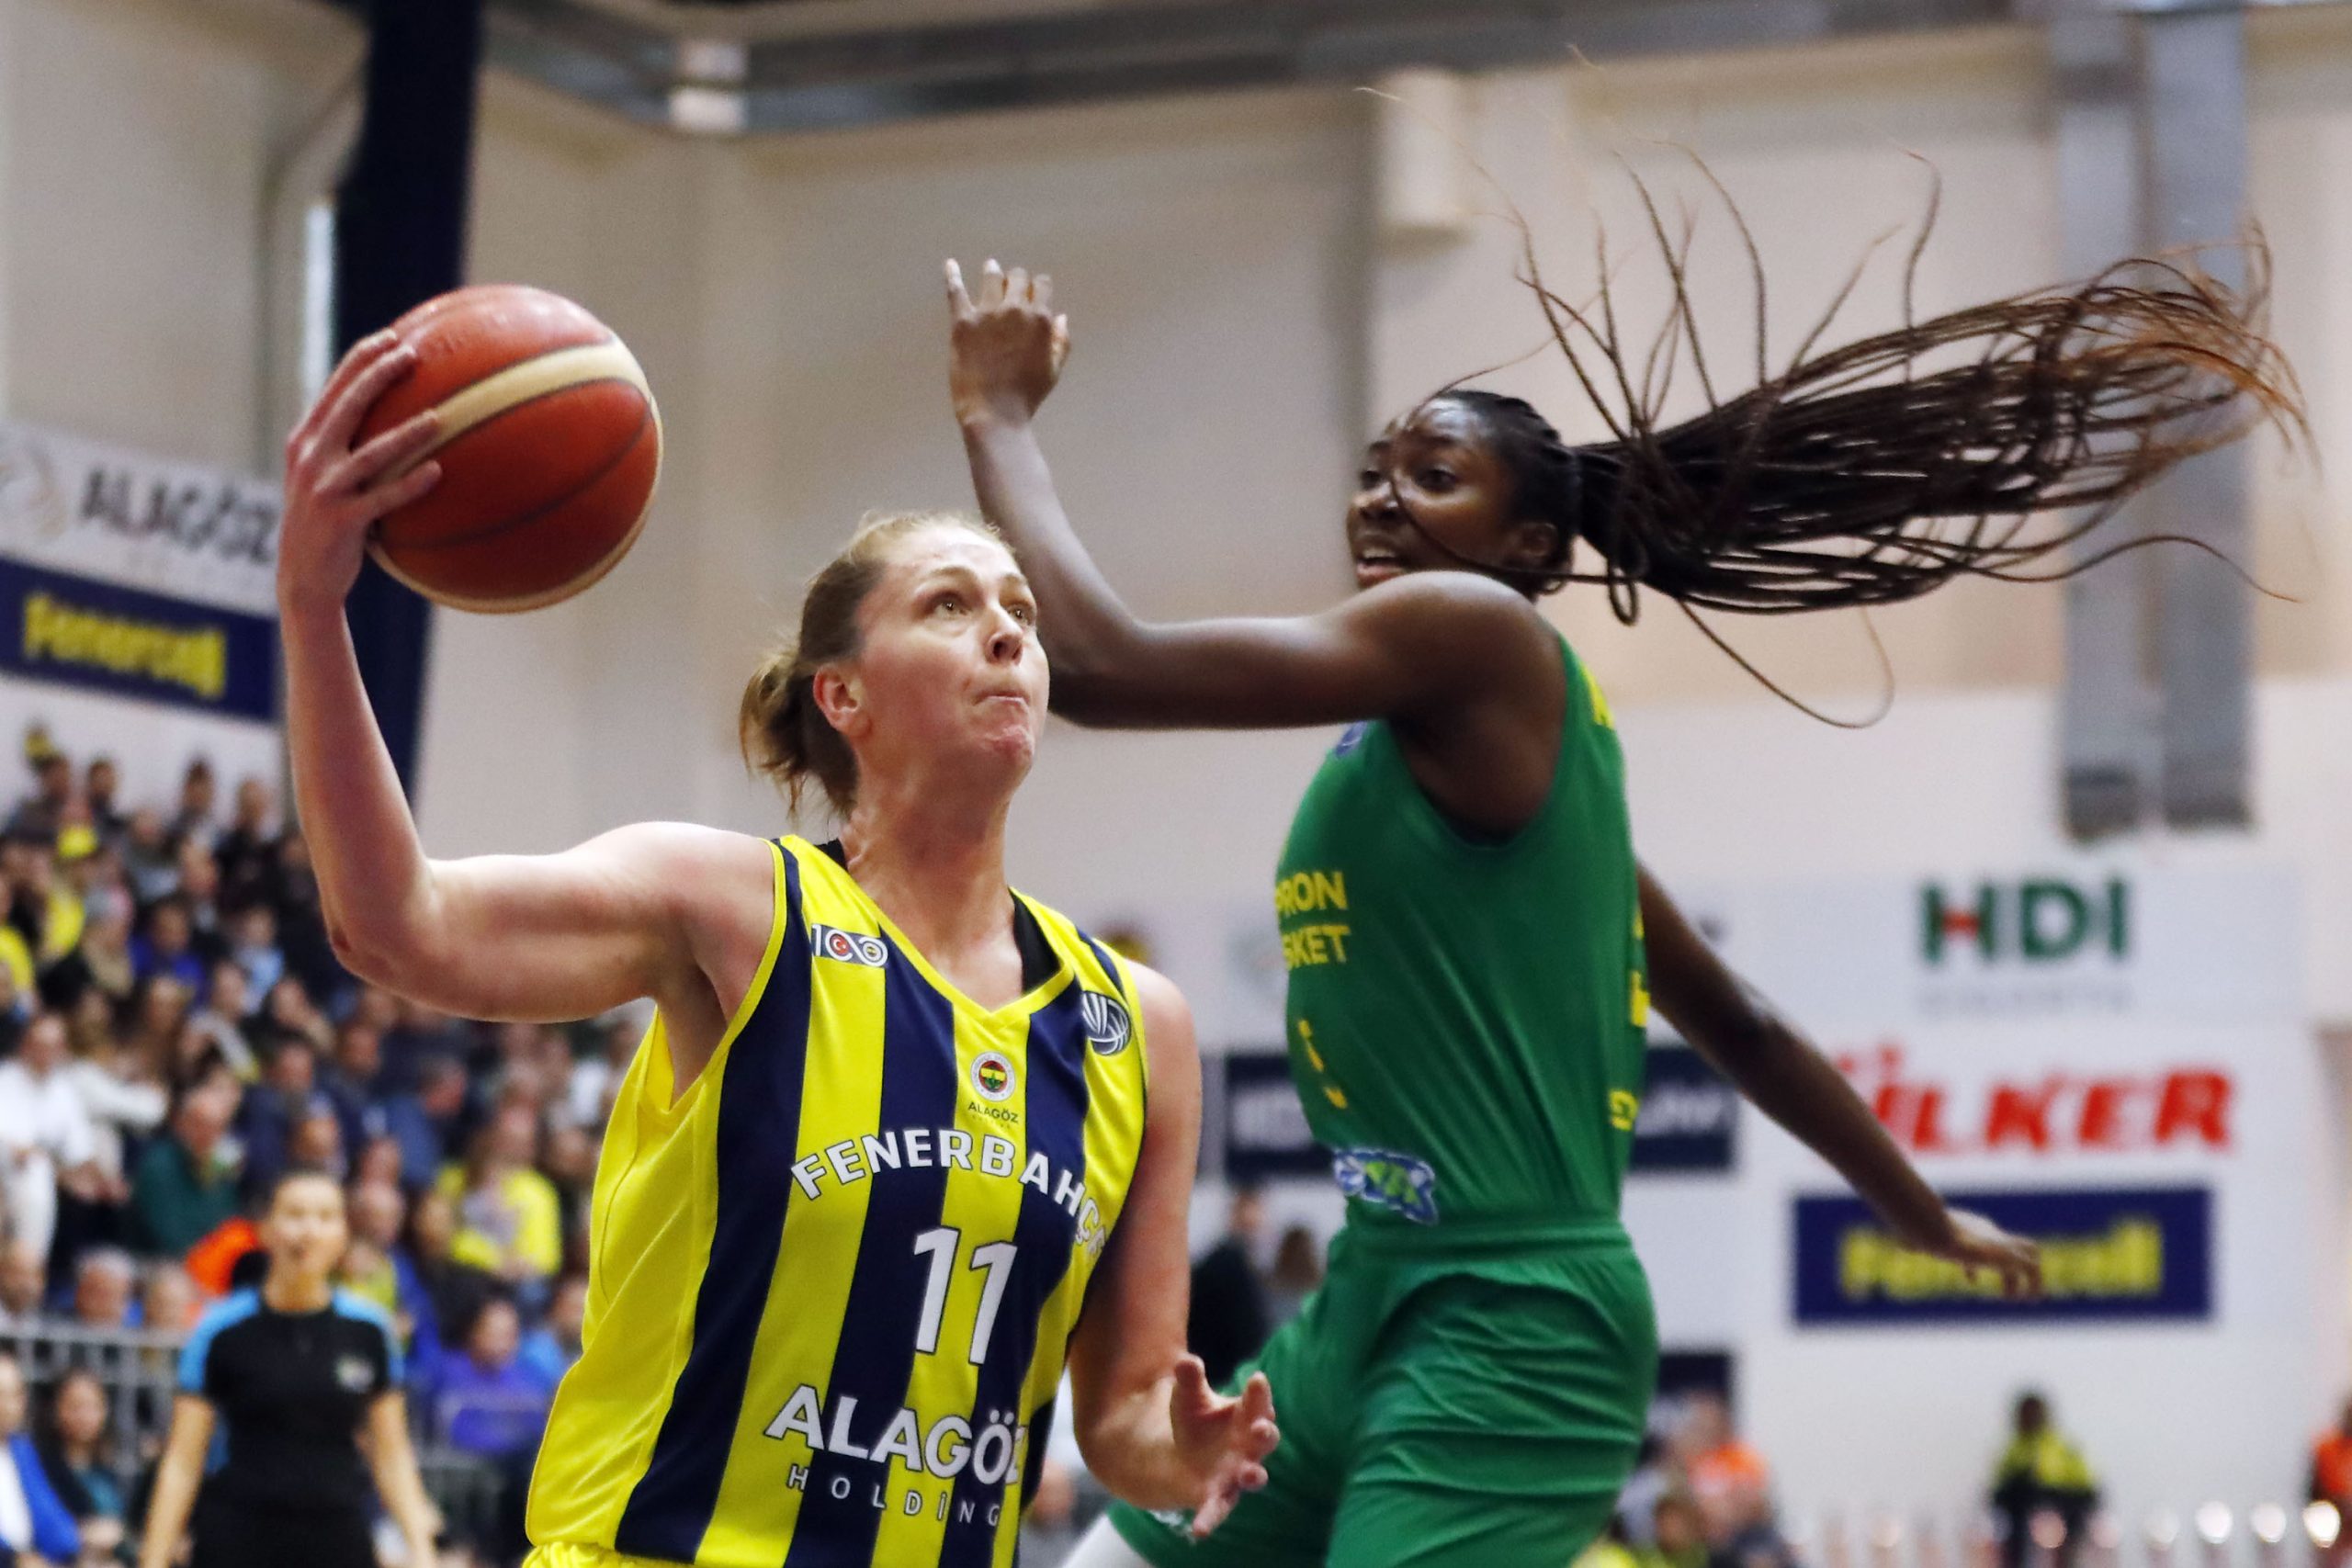 Sopron basket - Fenerbahçe alagöz holding canlı yayın